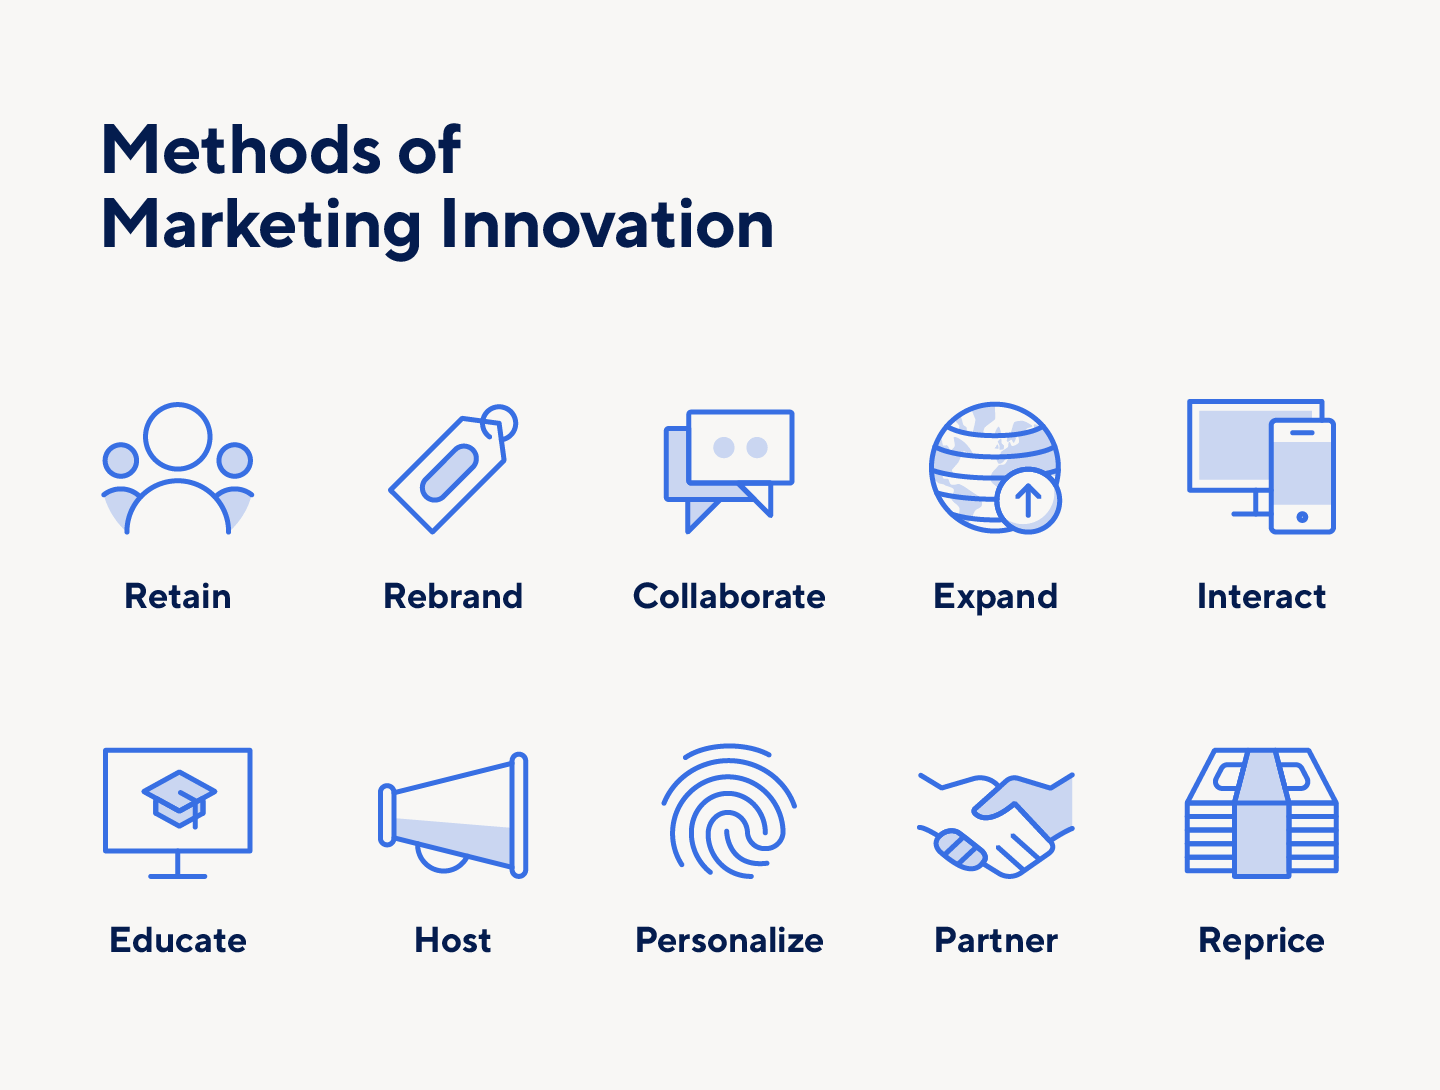 营销创新的方法包括品牌重塑、教育等等。